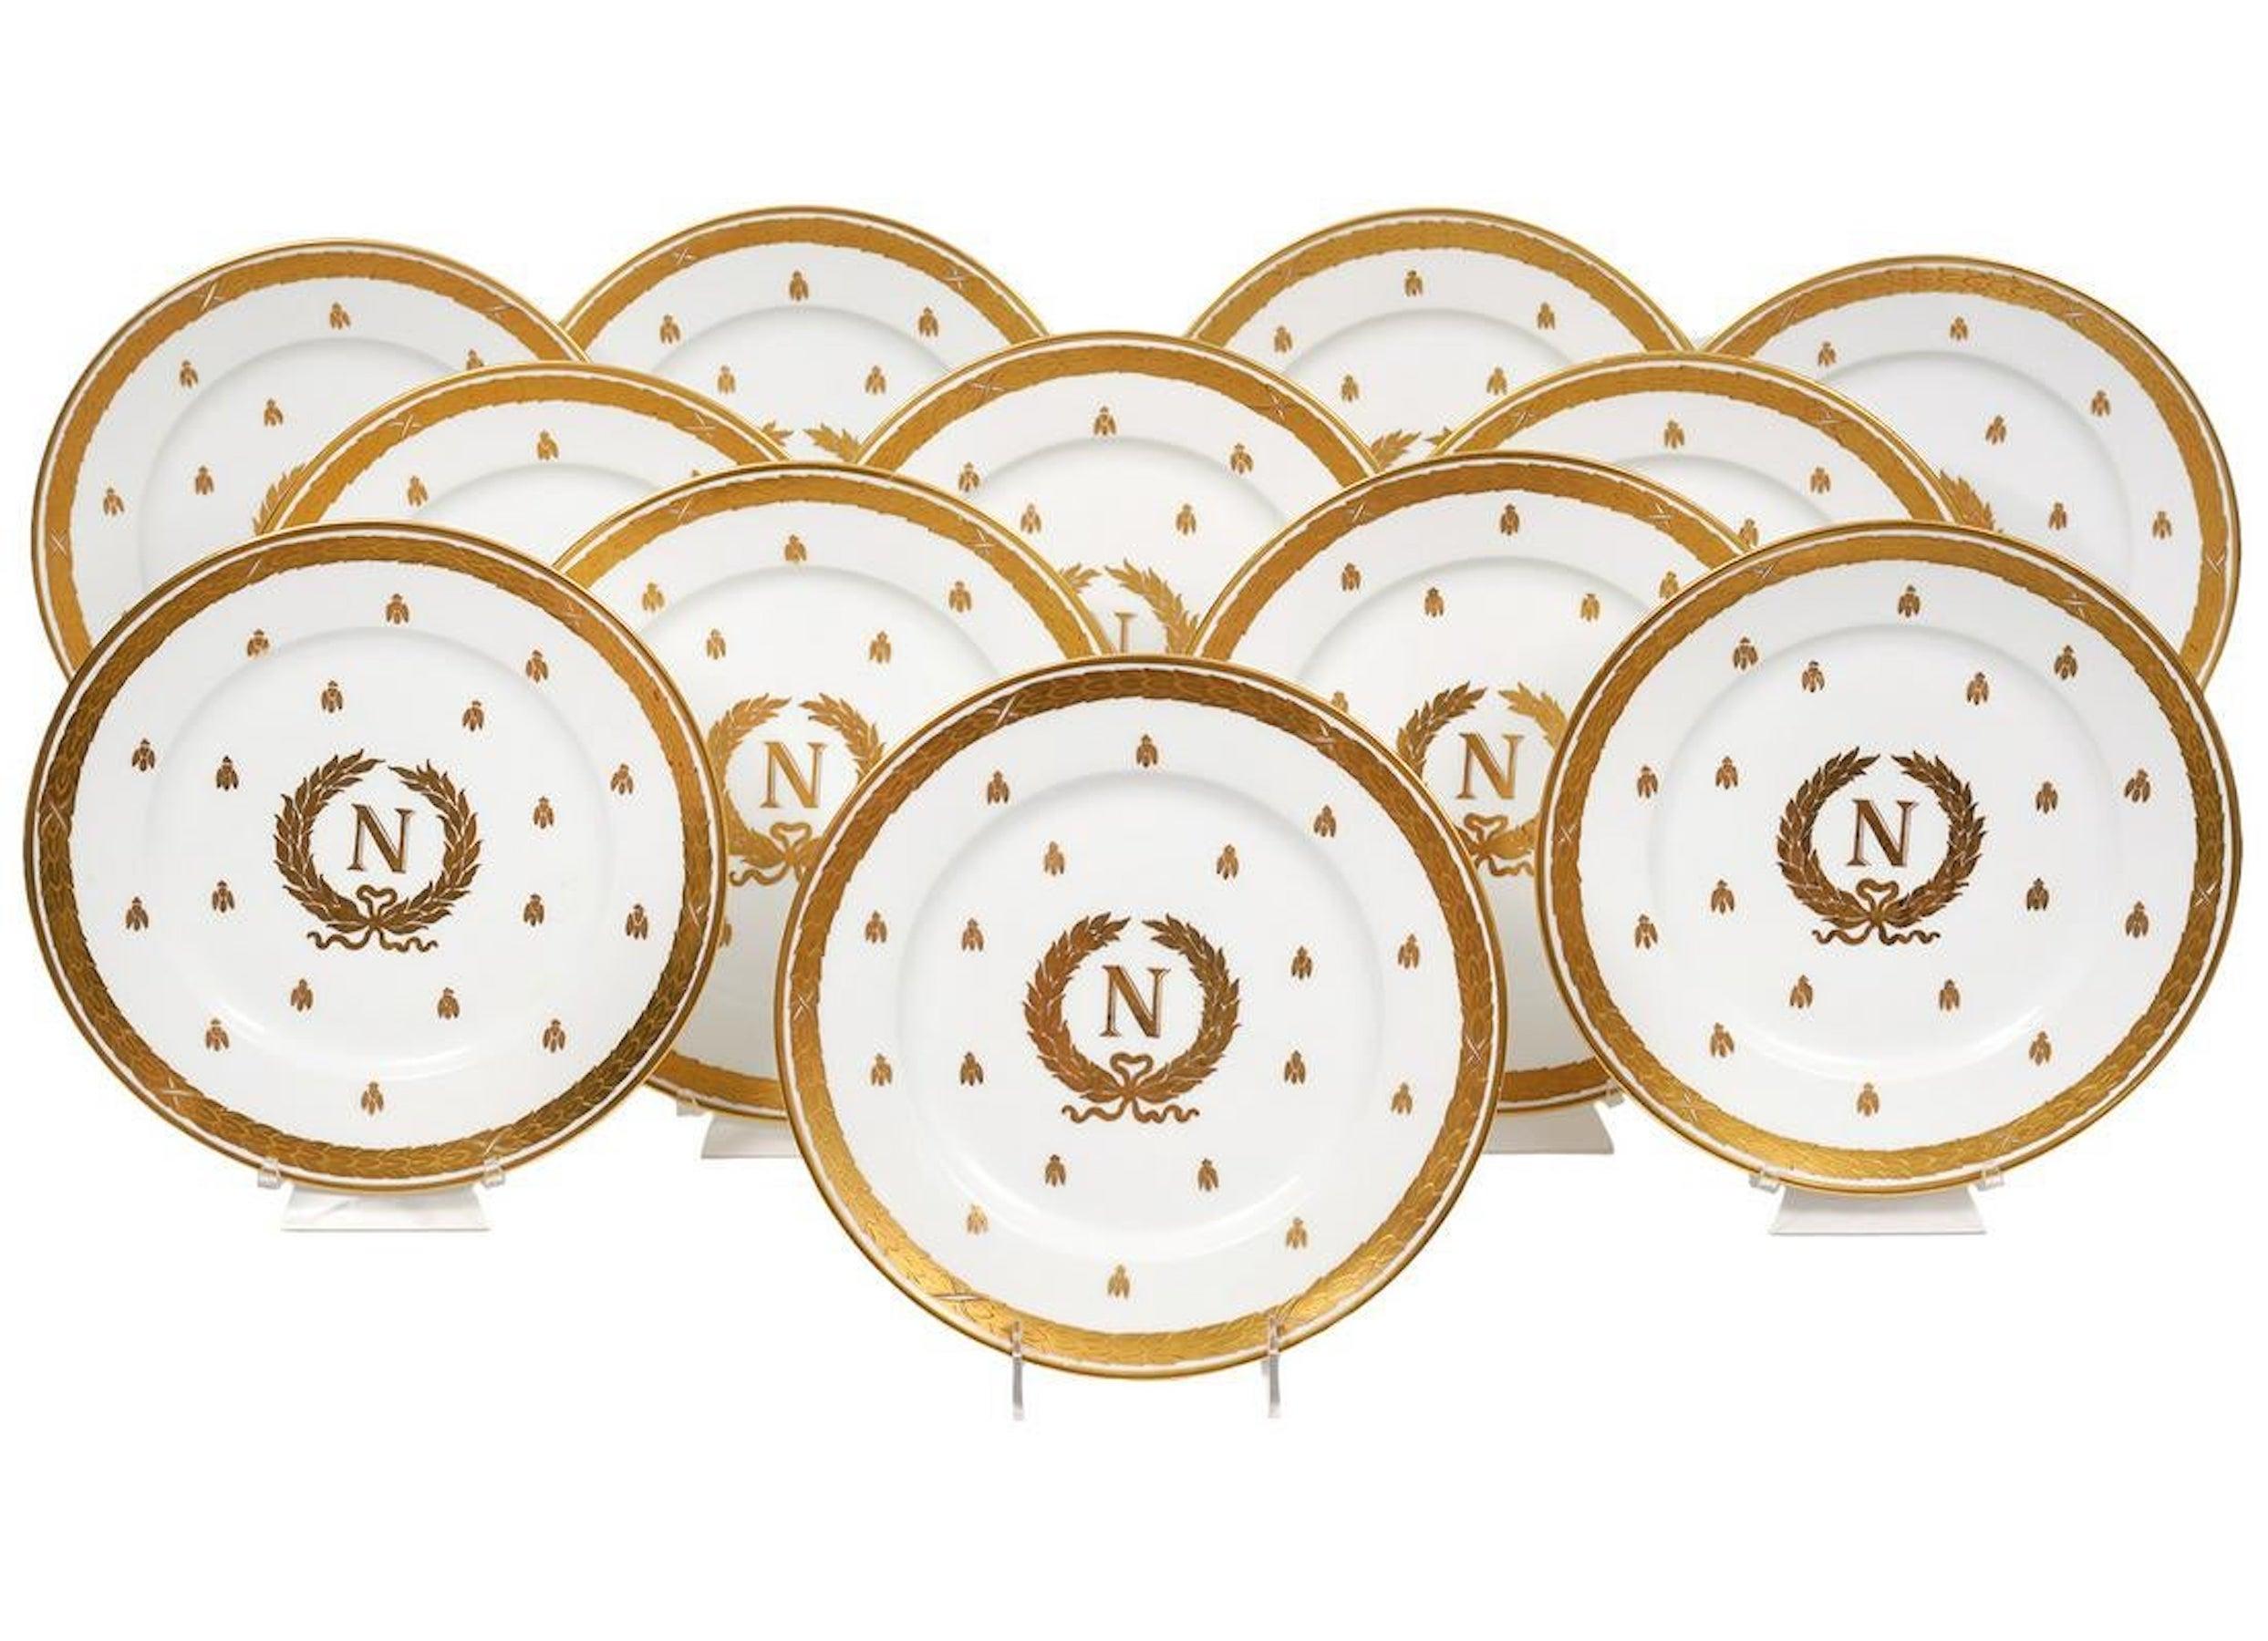 12 assiettes Napoléoniennes en émail doré en relief de Limoges, vers 1900, chacune décorée d'un entourage de laurier doré, rempli d'abeilles dorées, le centre avec un écusson Napoléonien de couronne de laurier et monogrammé 'N'.
La porcelaine est